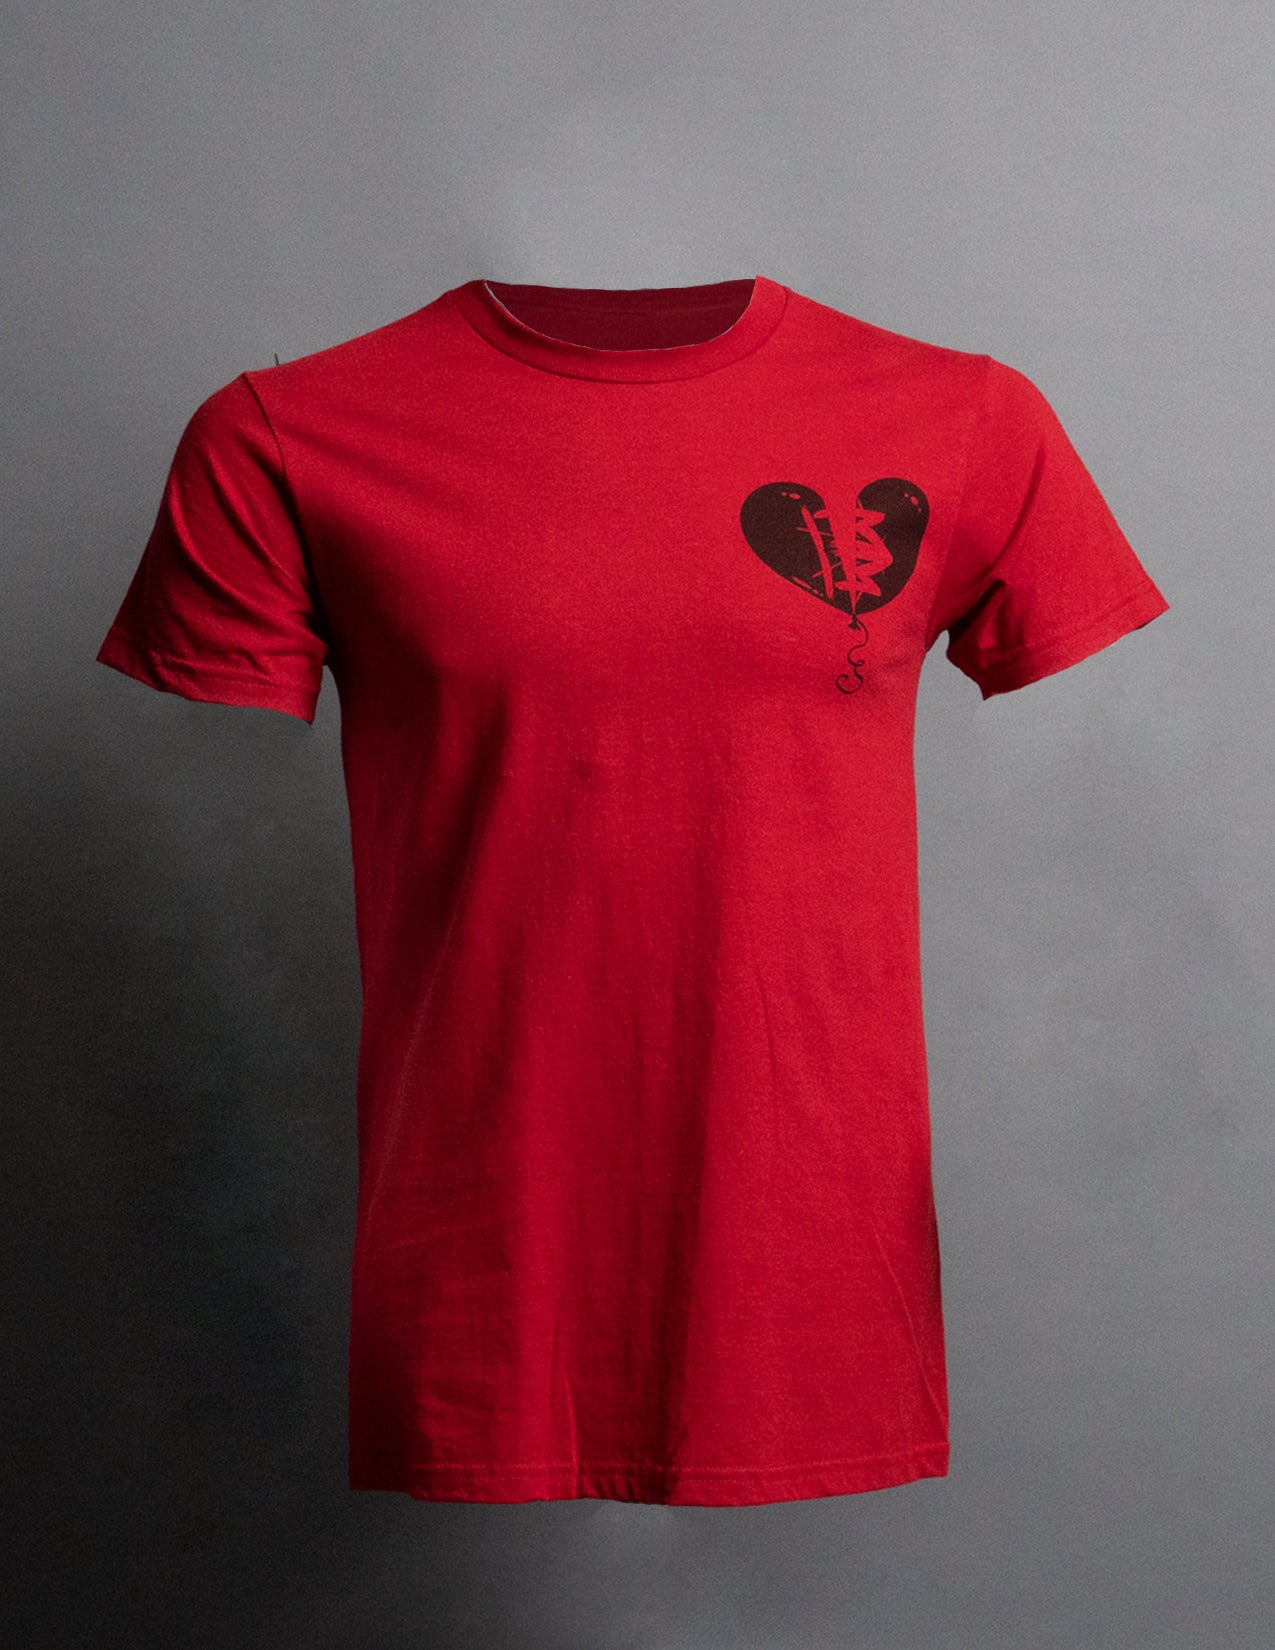 Broken Heart Boyz T-Shirt "Red"